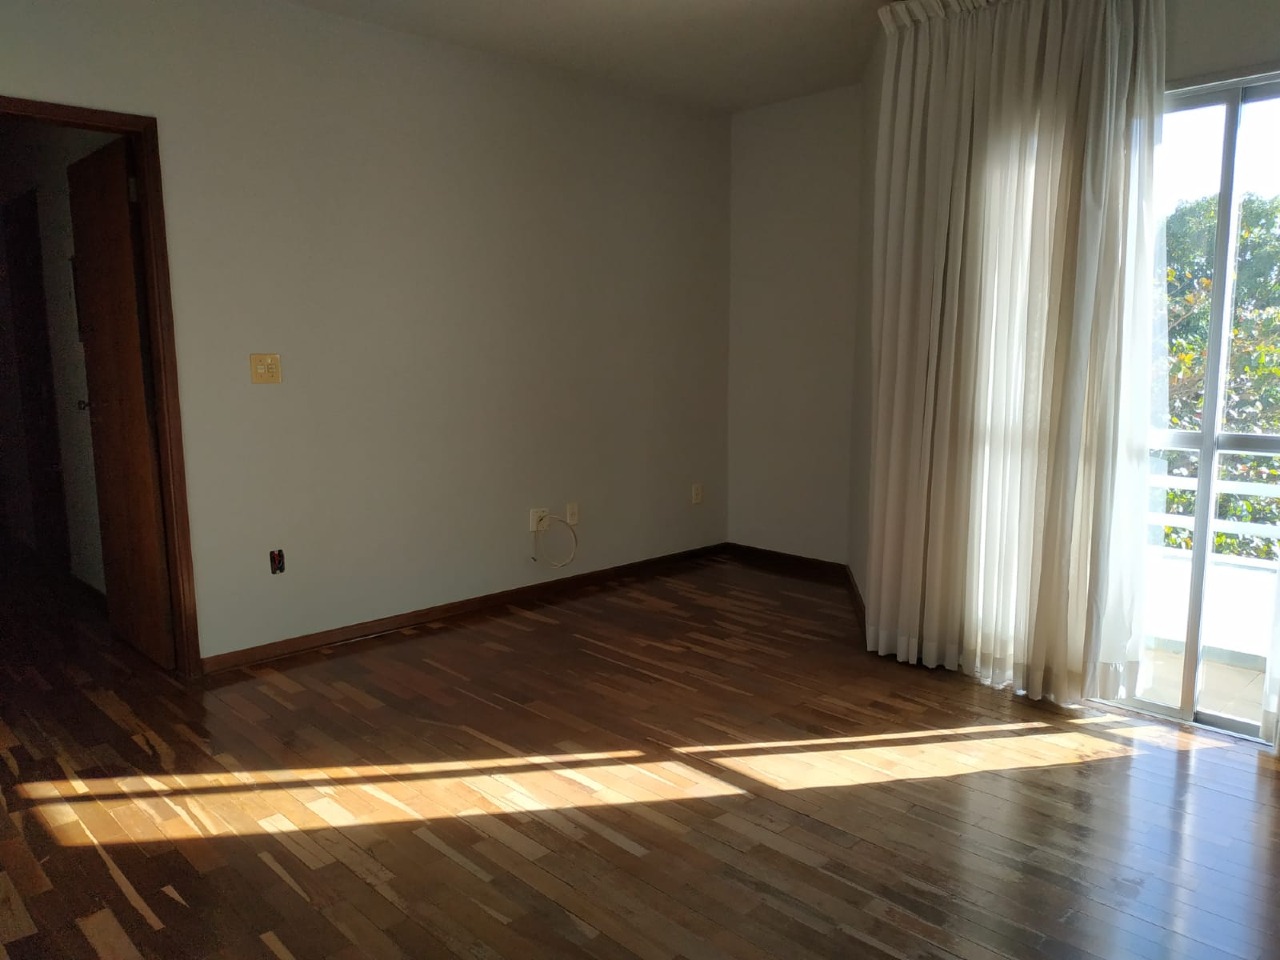 Apartamento para comprar, 3 quartos, 1 suíte, 1 vaga, no bairro Jardim São Cristóvão I em Rio das Pedras - SP